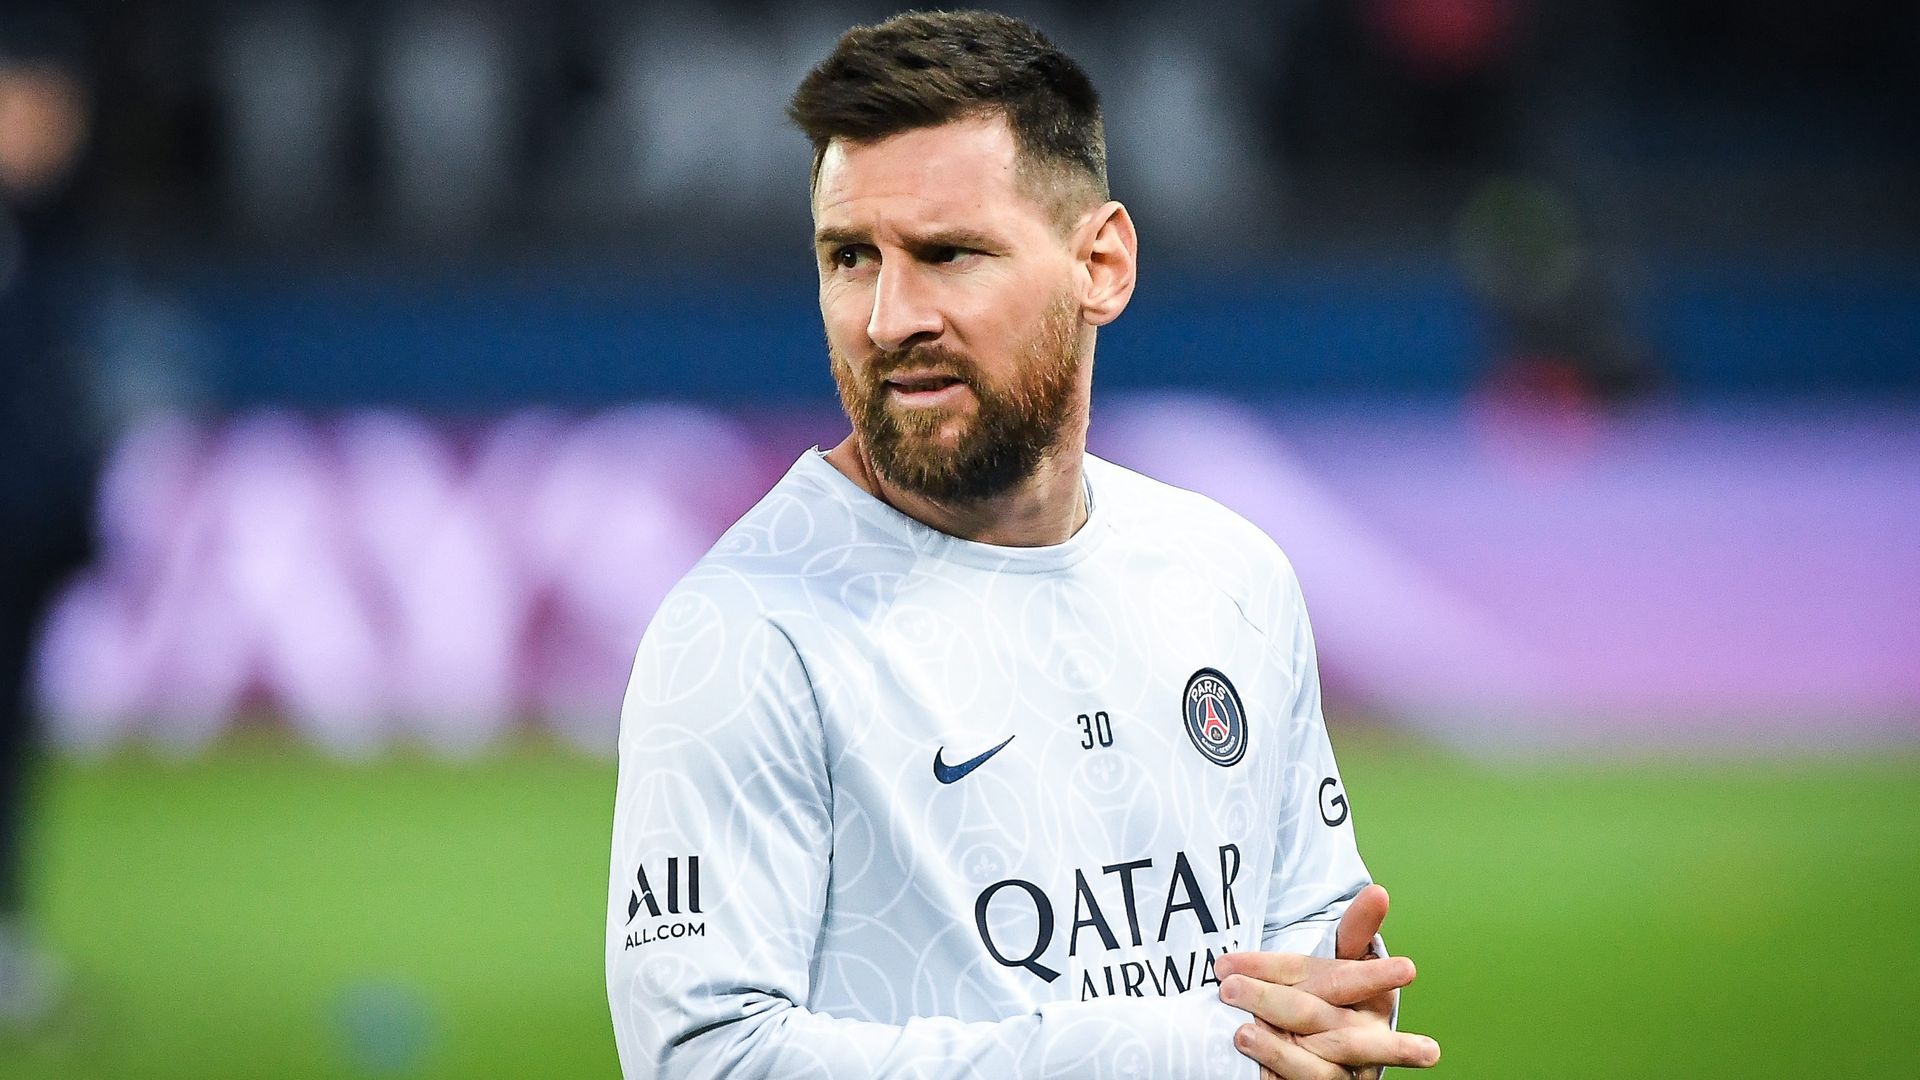 Meet Lionel Messi